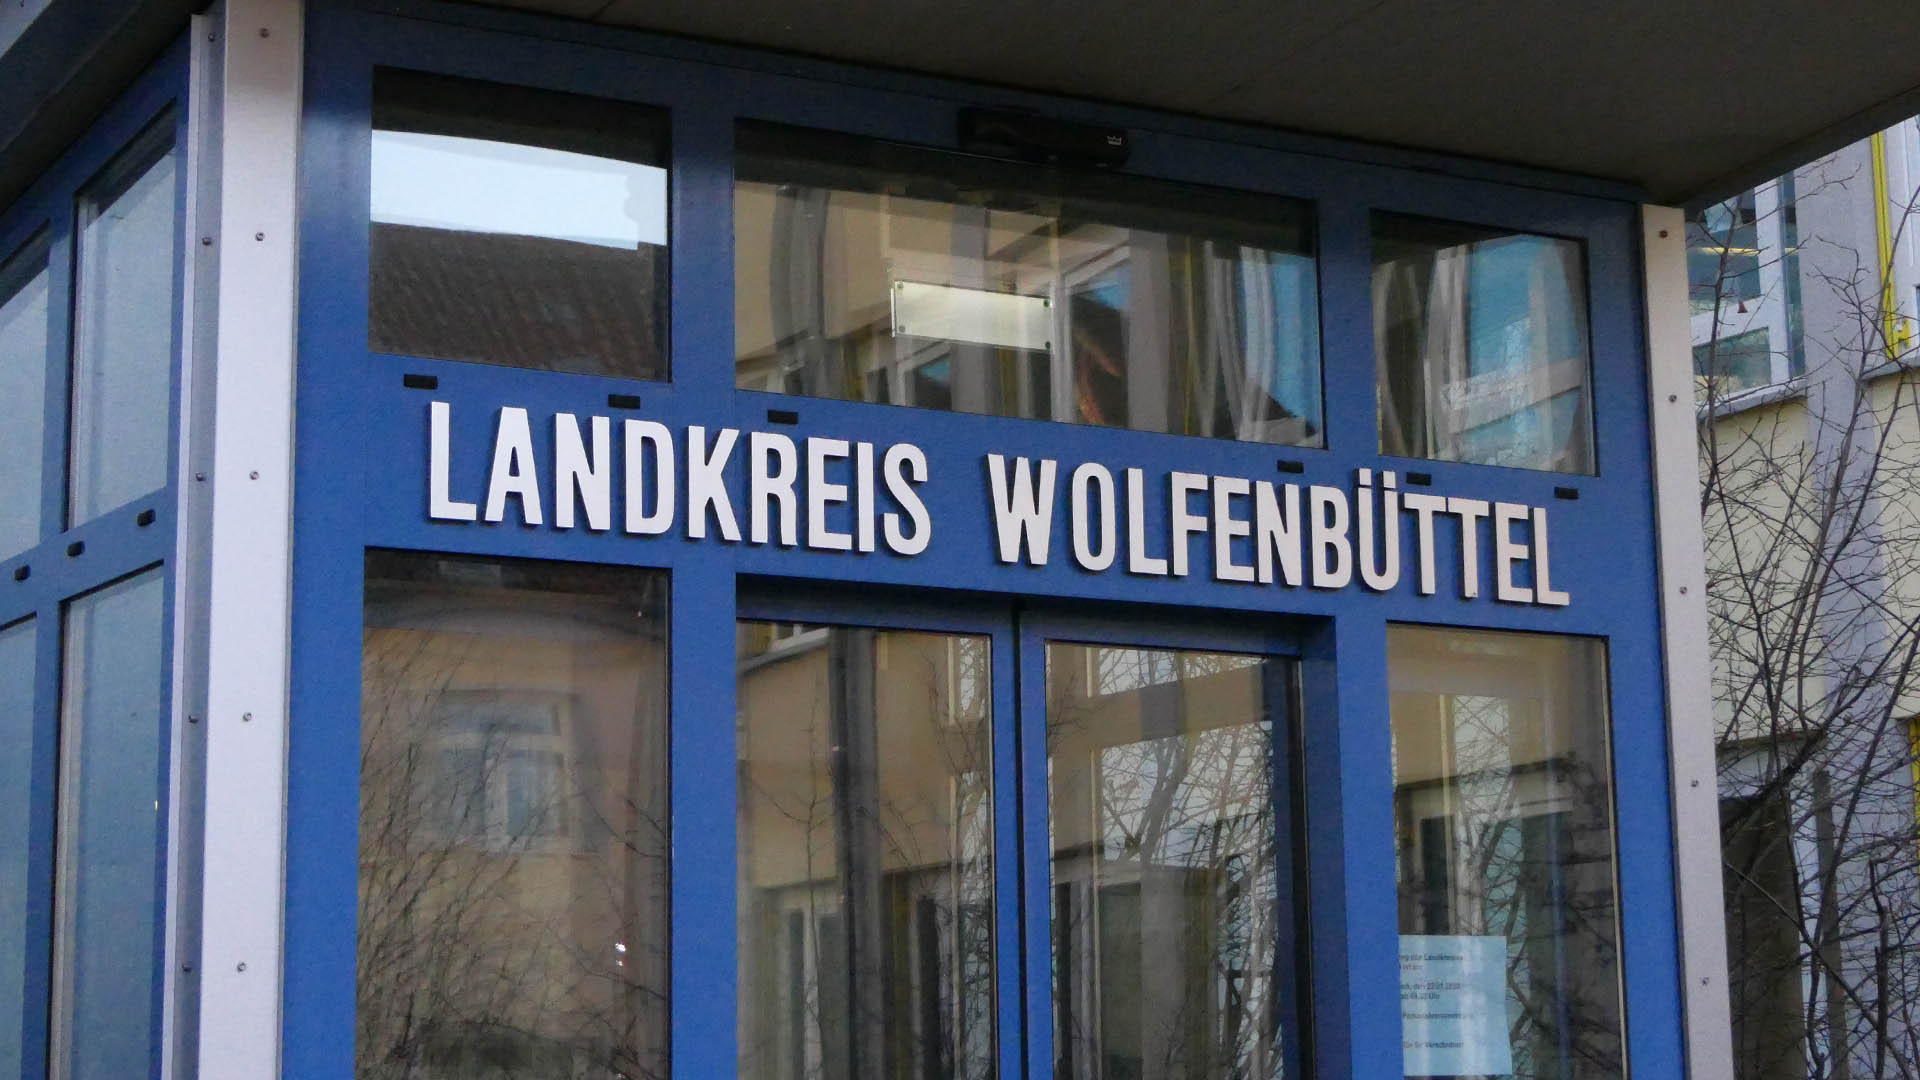 Schriftzug "Landkreis Wolfenbüttel" über dem Eingang.